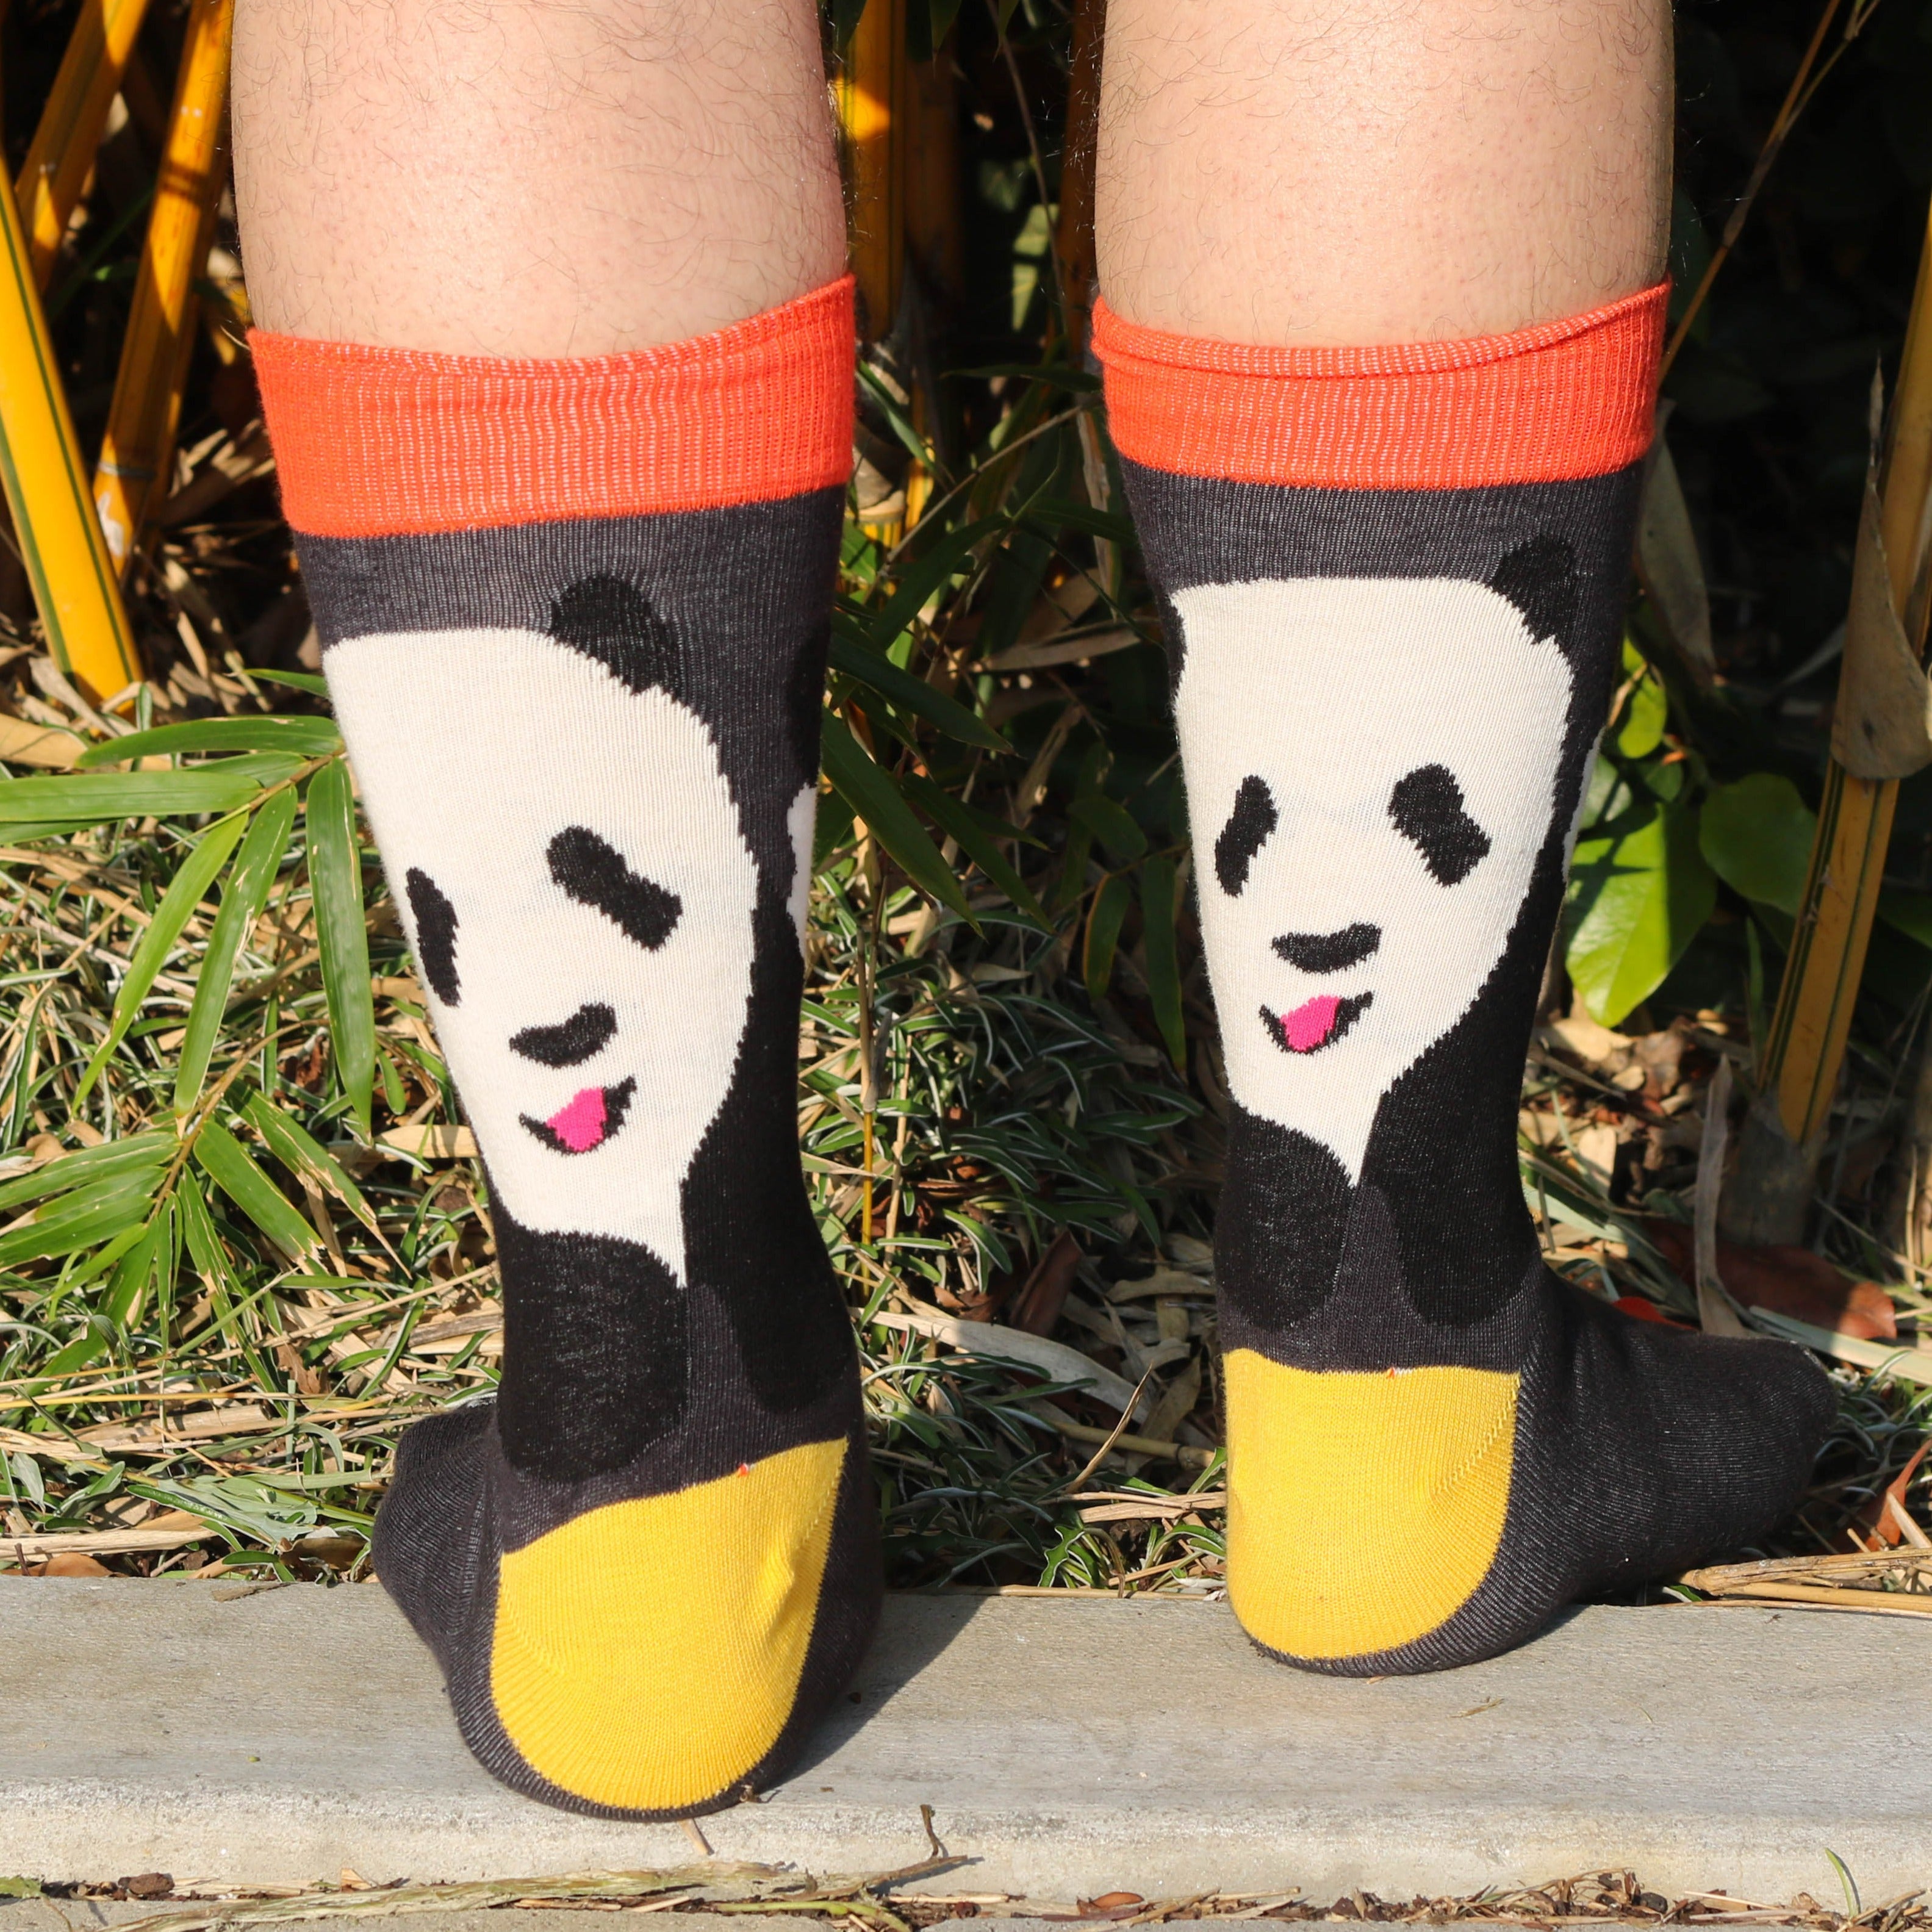 The Great Panda Socks from the Sock Panda